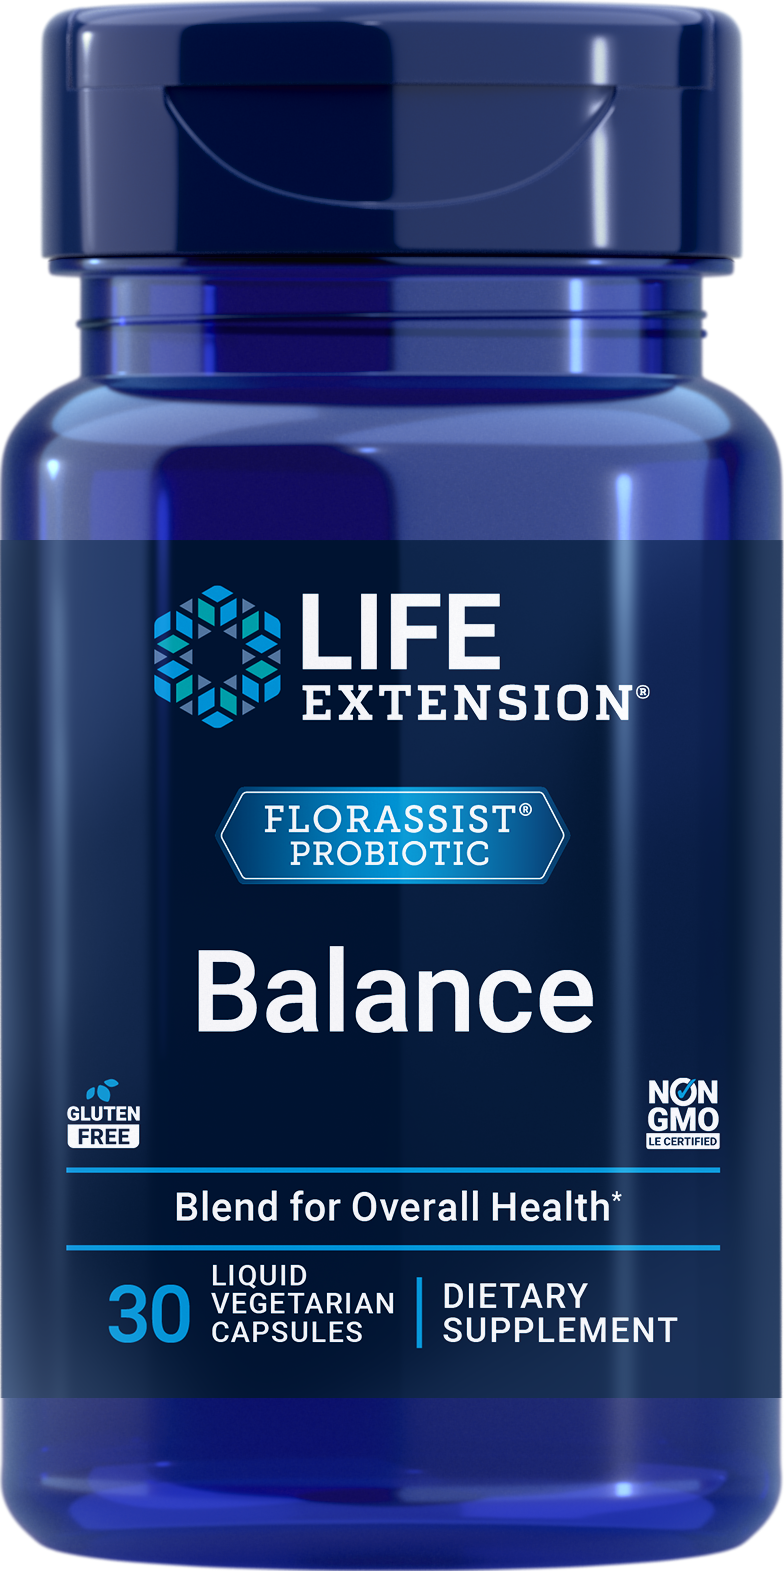 Life Extension Florassist Probiotic Balance 30 Liquid Vcaps